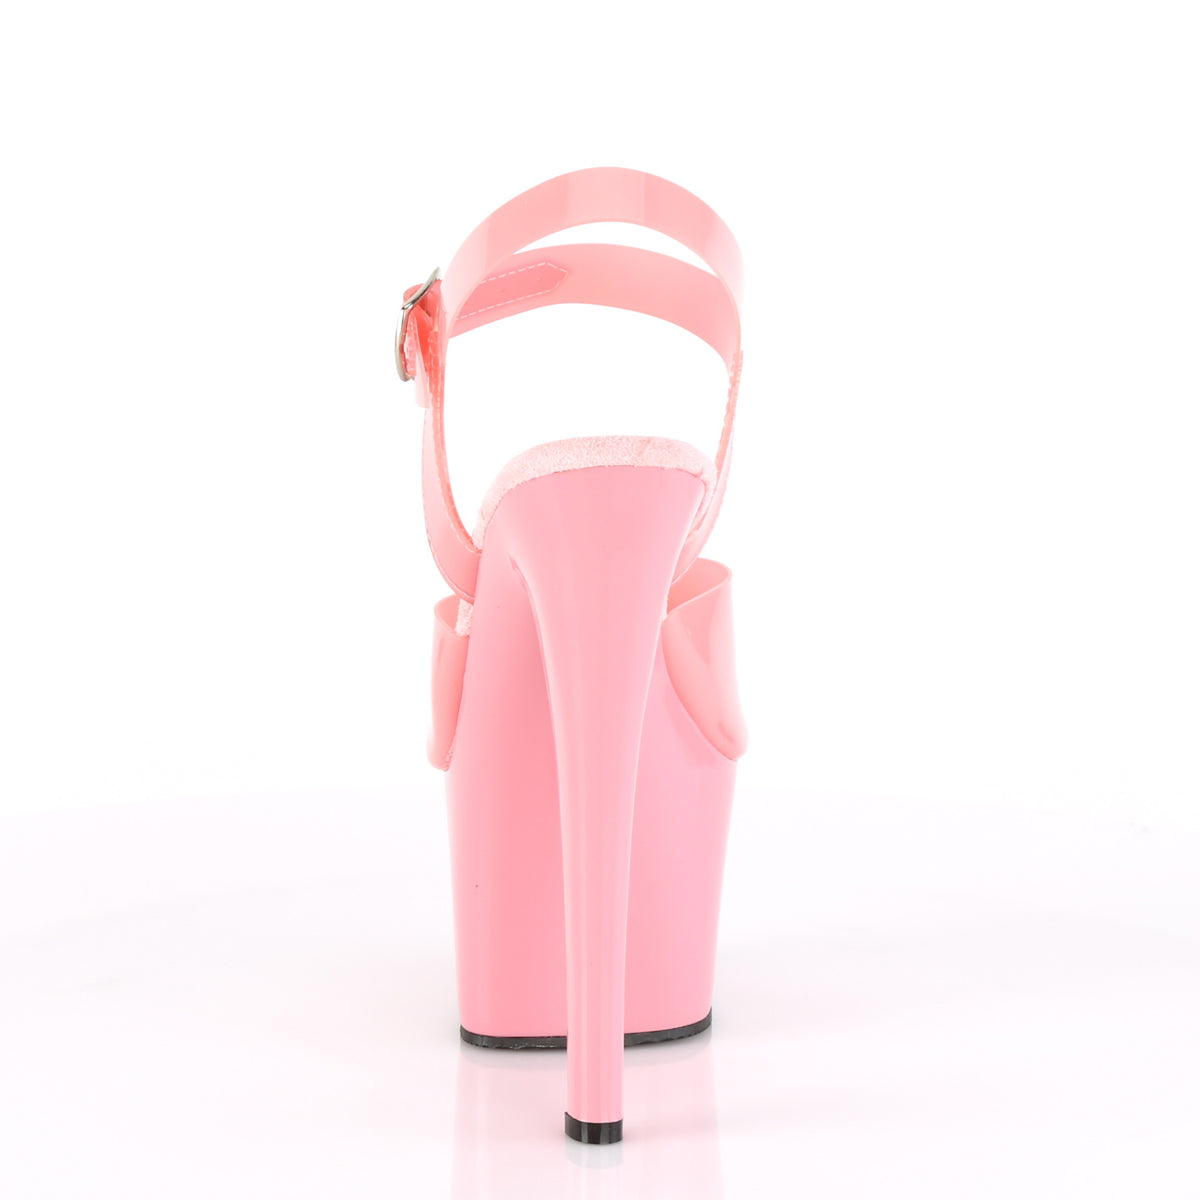 SKY-308N Pleaser 7" Heel Baby Pink Pole Dancing Platforms-Pleaser- Sexy Shoes Fetish Footwear